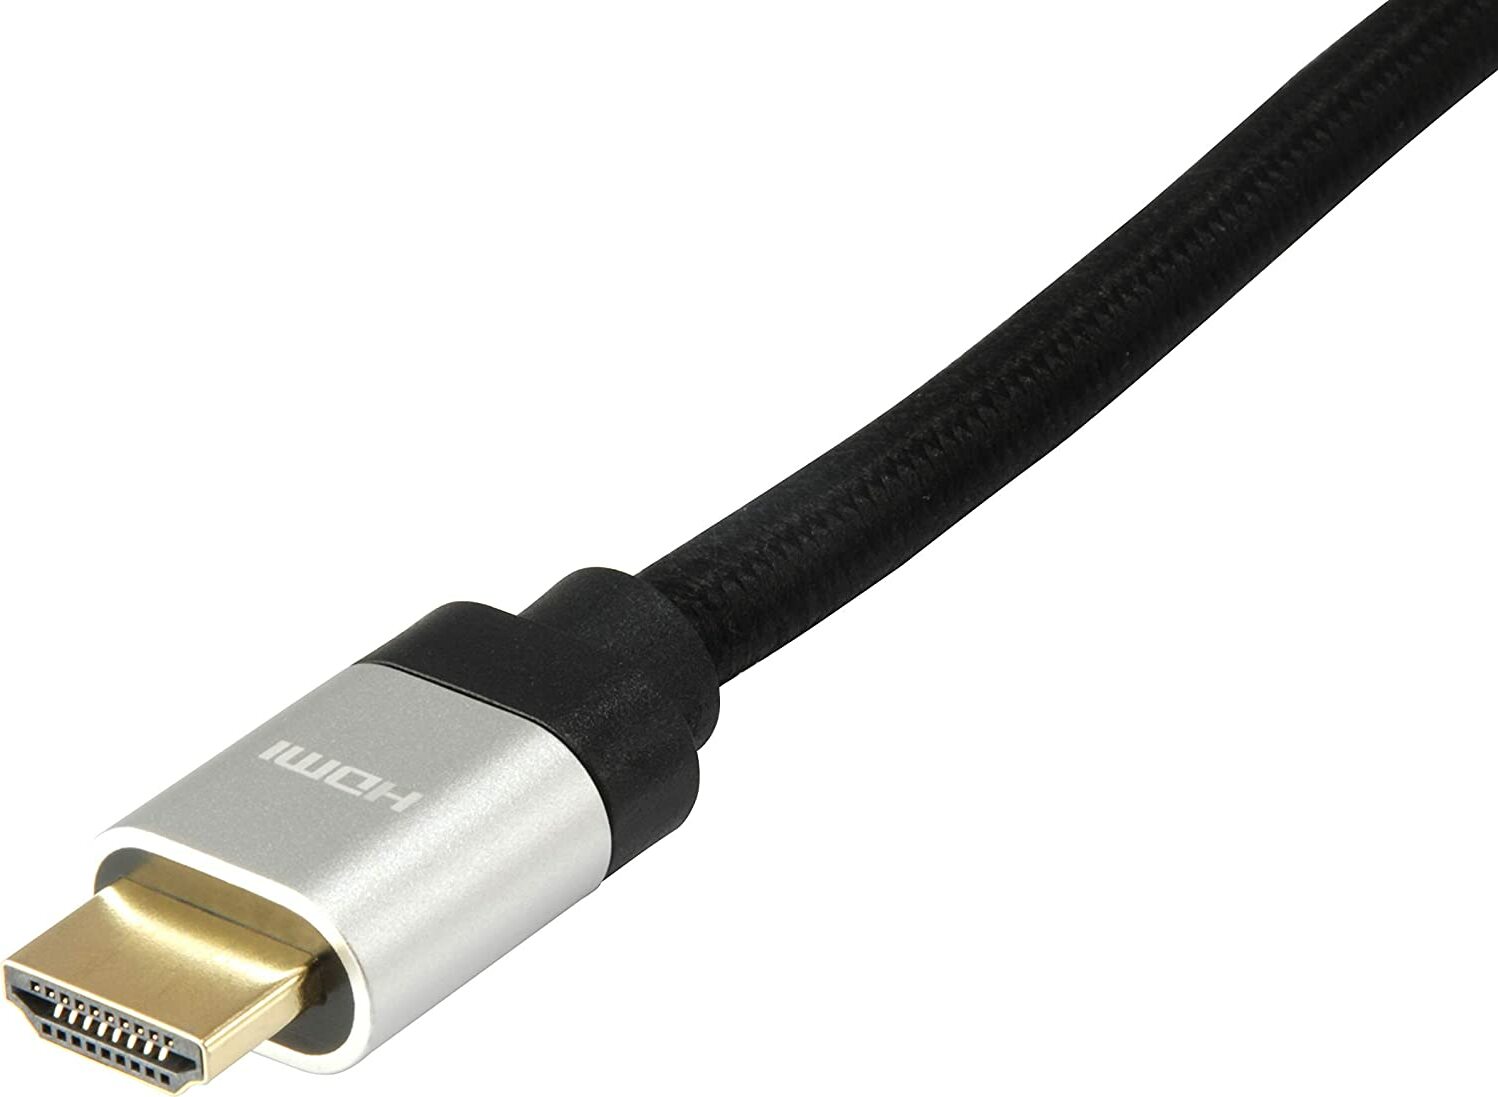 equip - Highspeed - HDMI-Kabel mit Ethernet - HDMI männlich zu HDMI männlich - 2 m - Schwarz - geformt, 8K Unterstützung